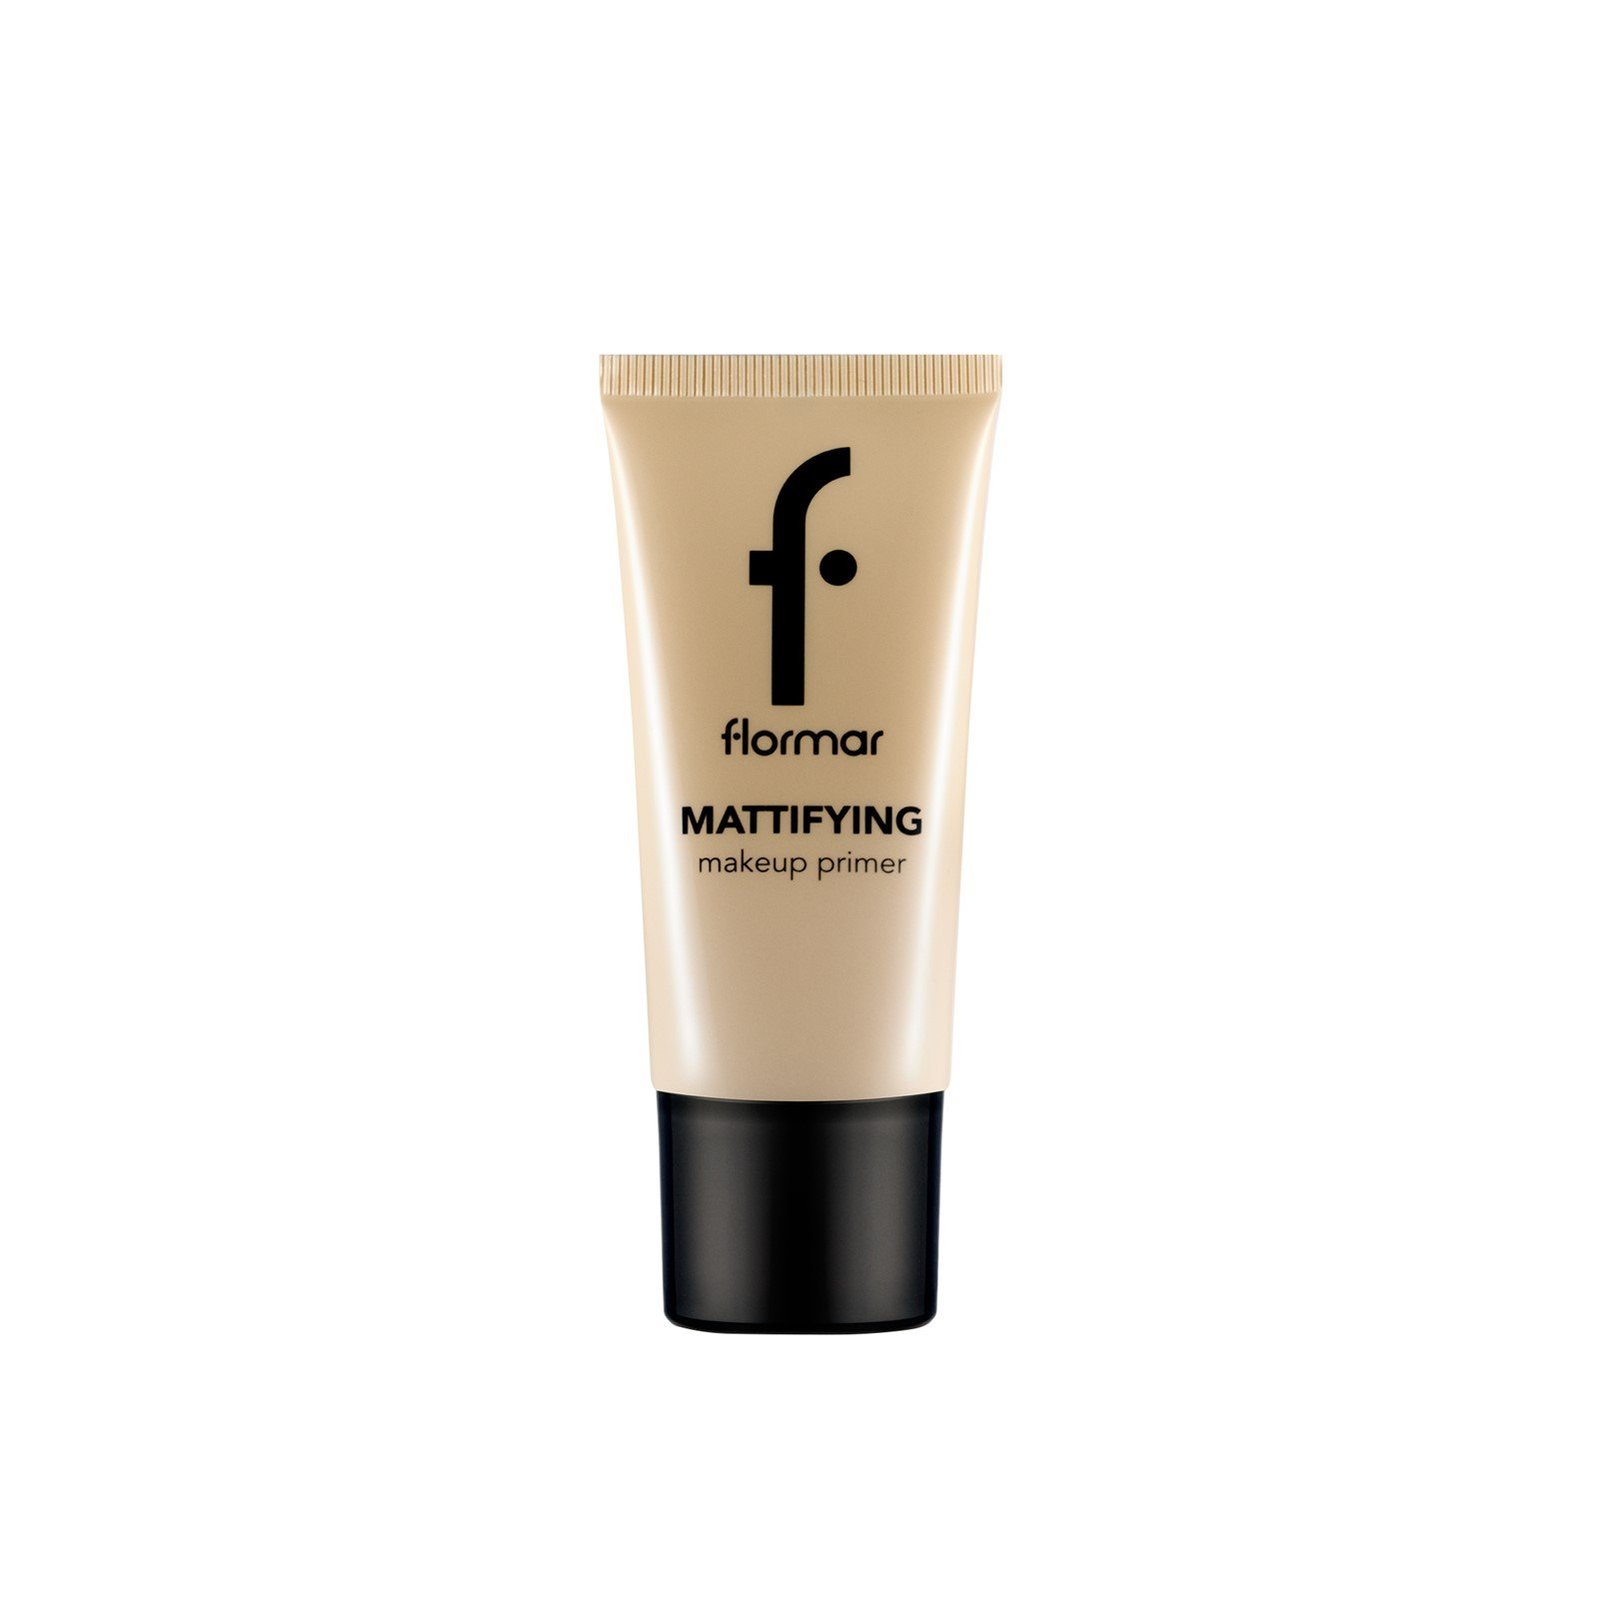 Flormar Mattifying Makeup Primer 35ml (1.18floz)